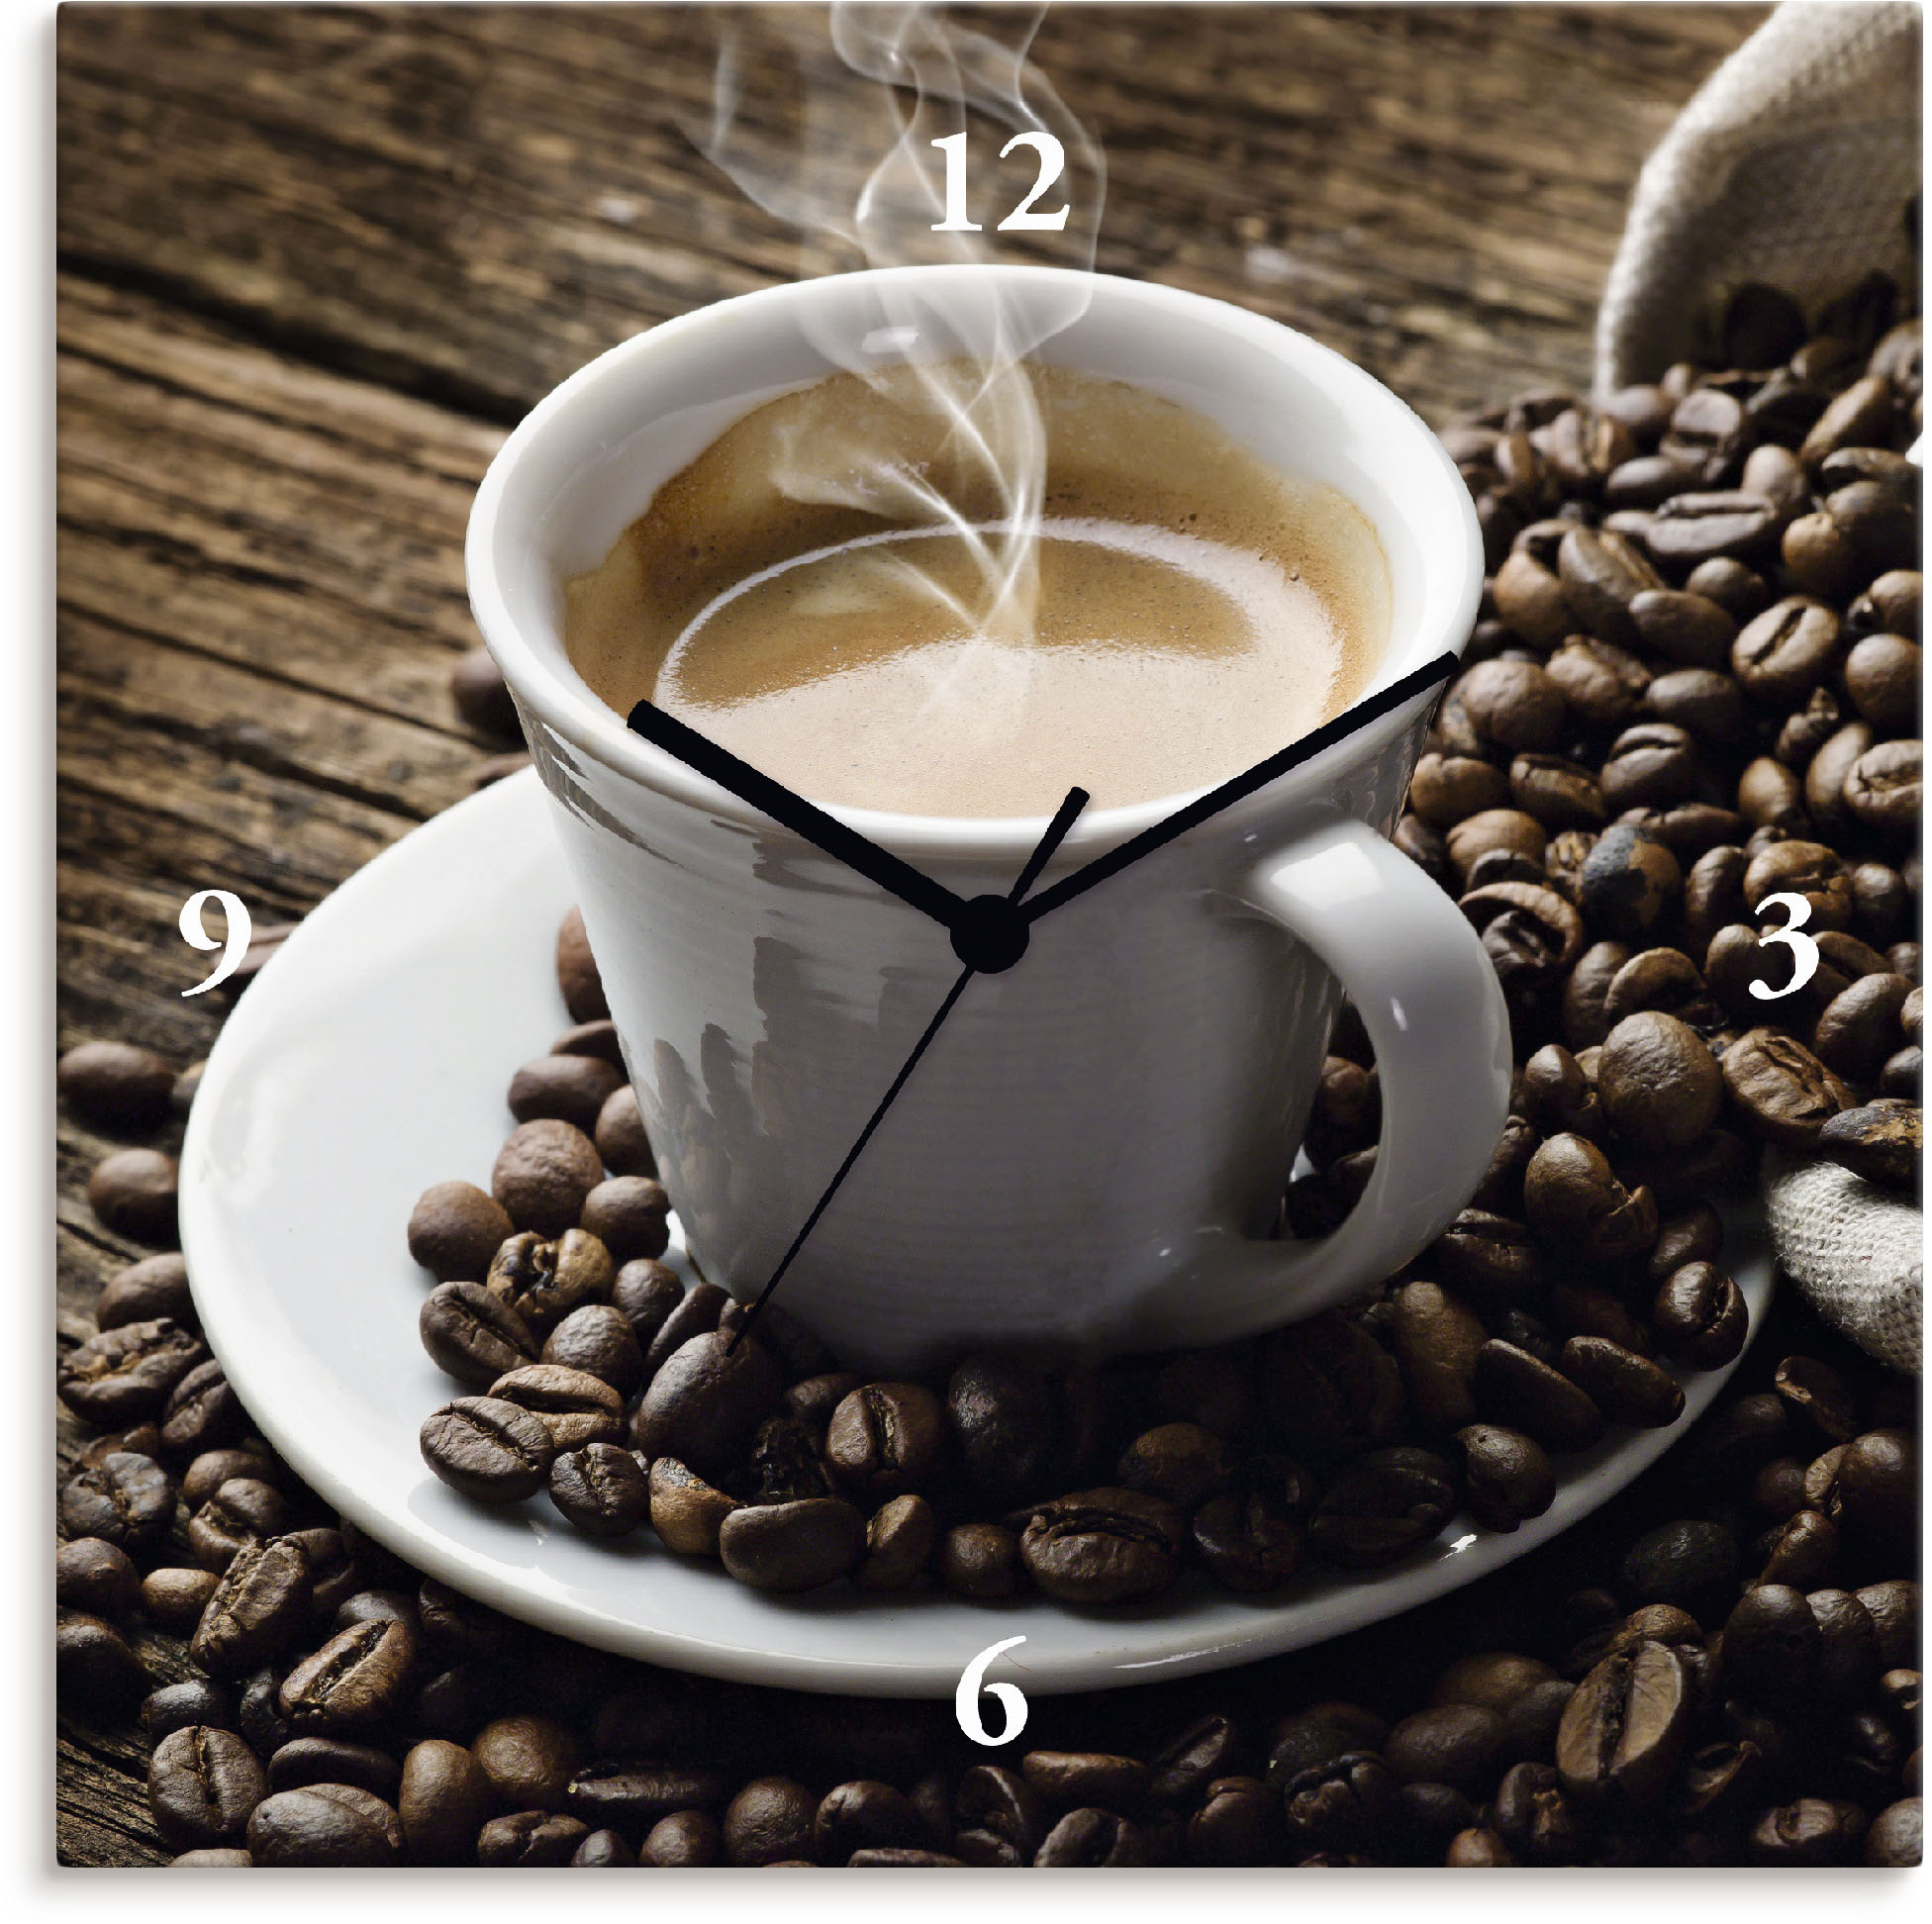 Artland Wanduhr »Heisser Kaffee - dampfender Kaffee«, wahlweise mit Quarz- oder Funhuhrwerk, lautlos ohne Tickgeräusche